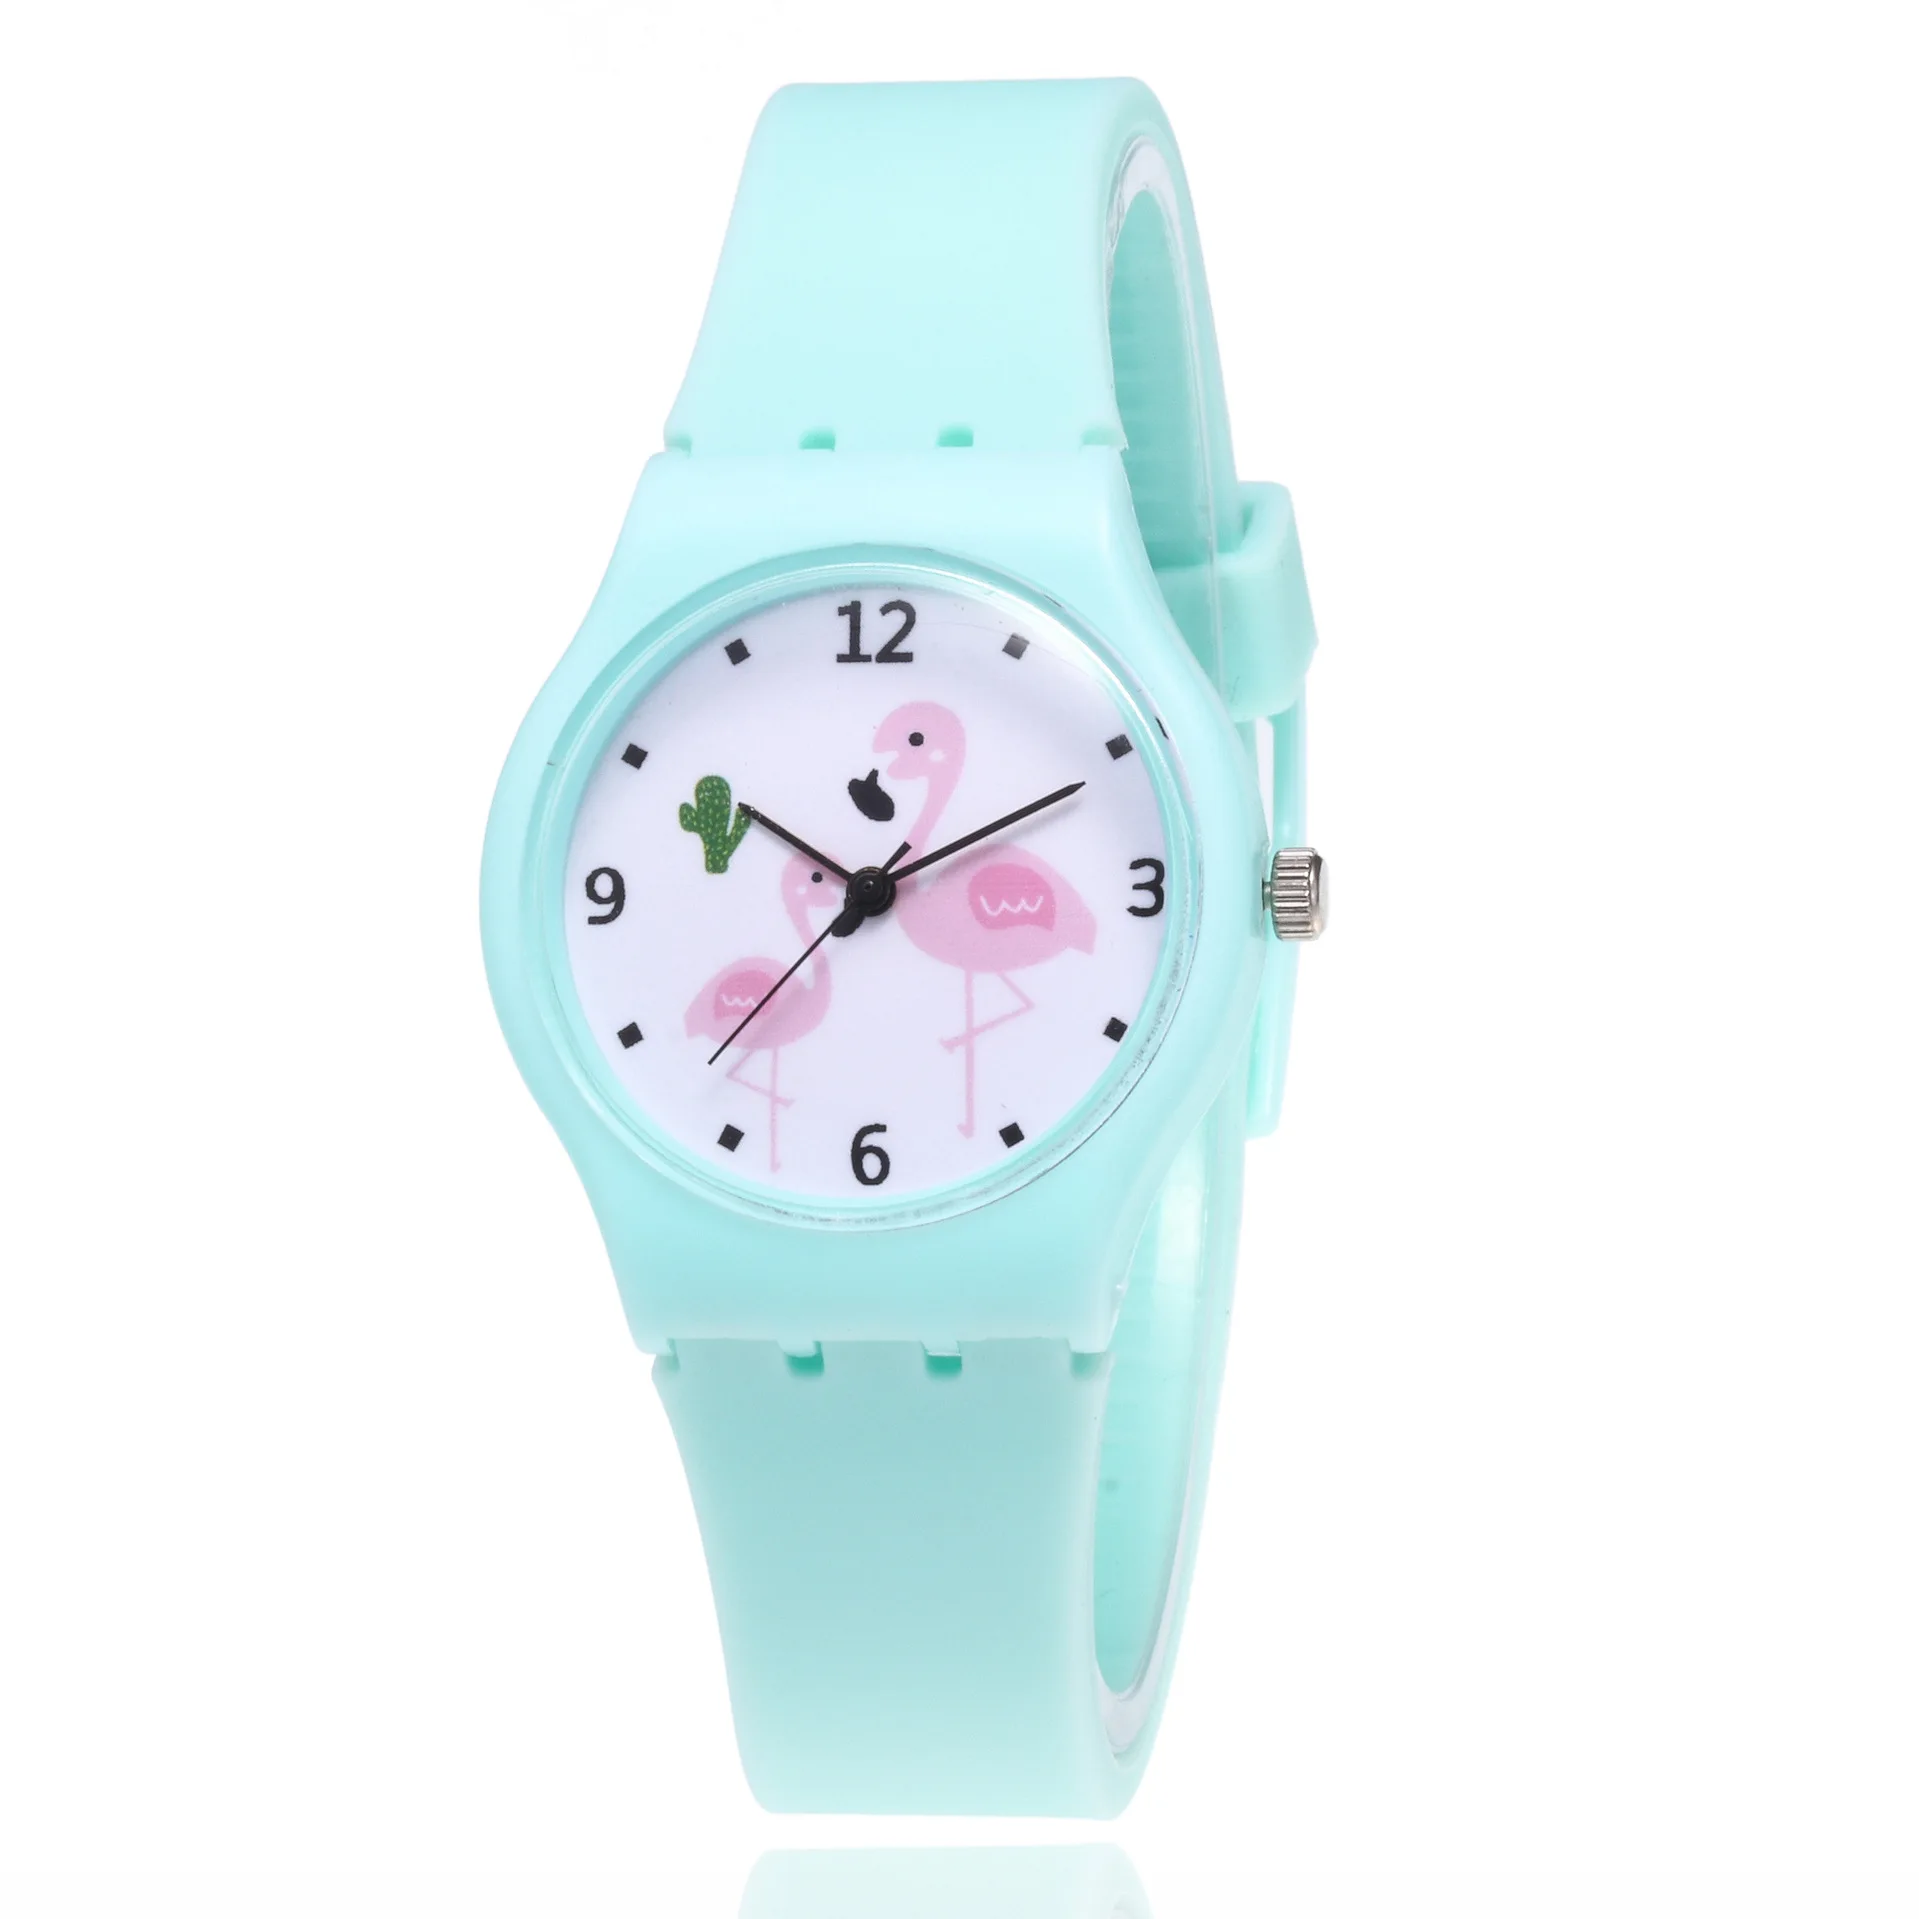 Новые модные силиконовые часы с фламинго для отдыха, женские кварцевые детские Студенческие часы - Цвет: Небесно-голубой